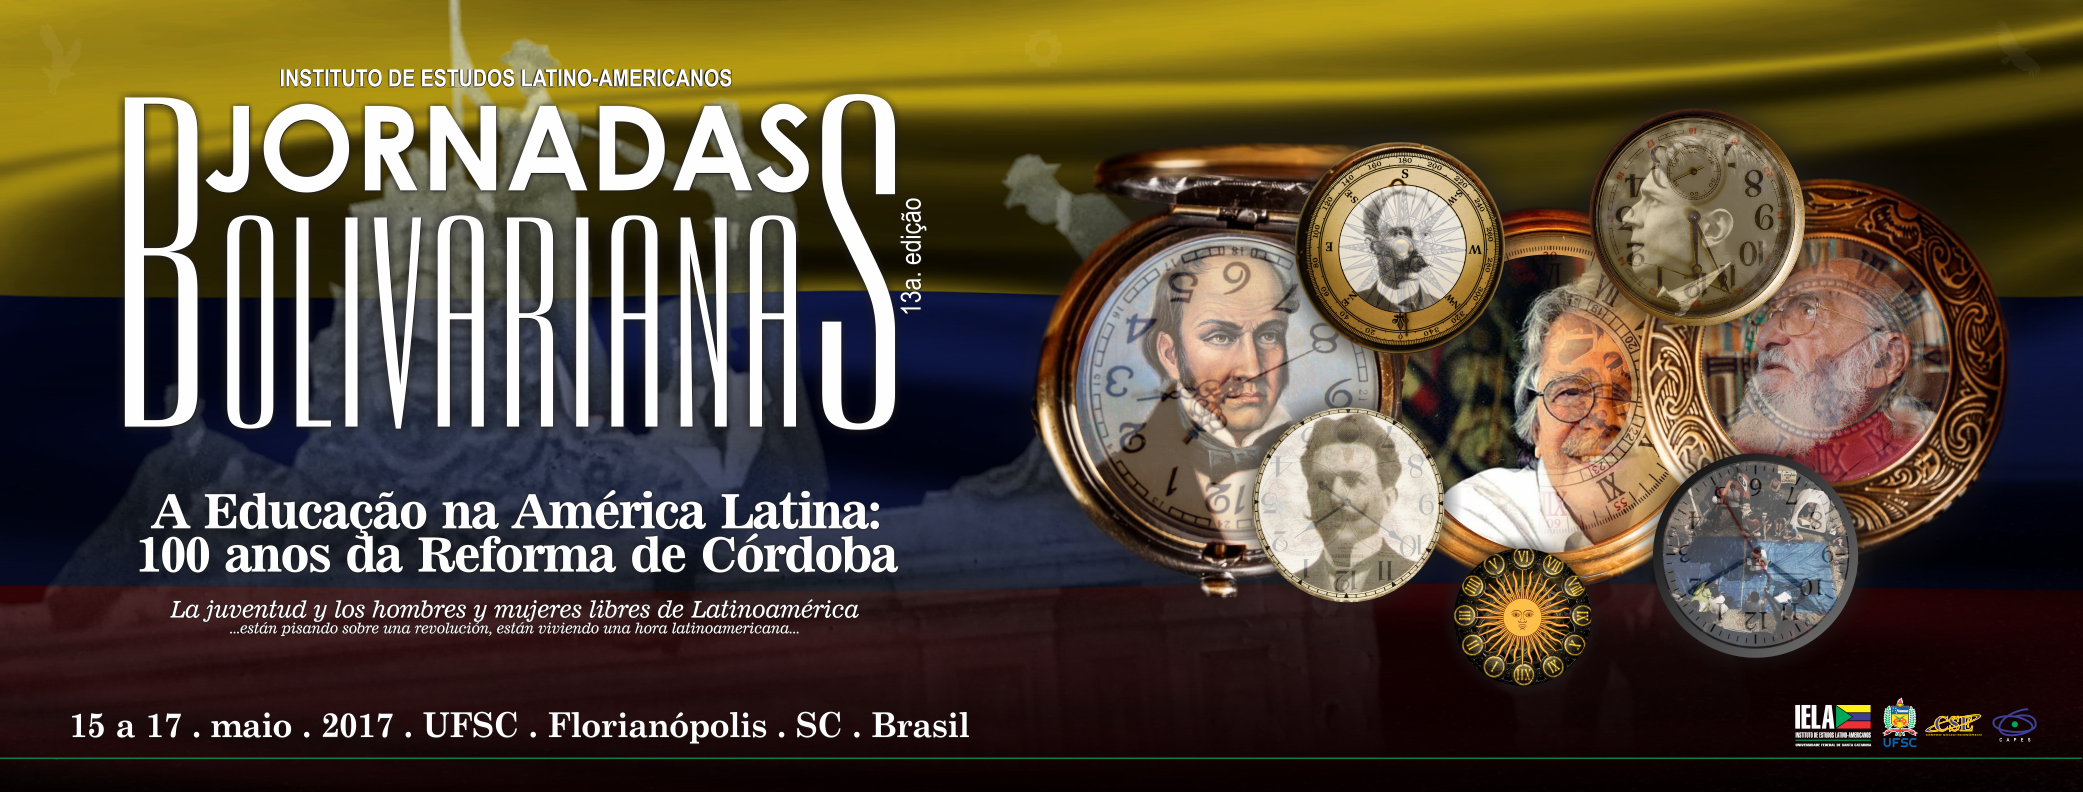 Jornadas Bolivarianas XIII: A educação na América Latina e os 100 anos da Reforma de Córdoba